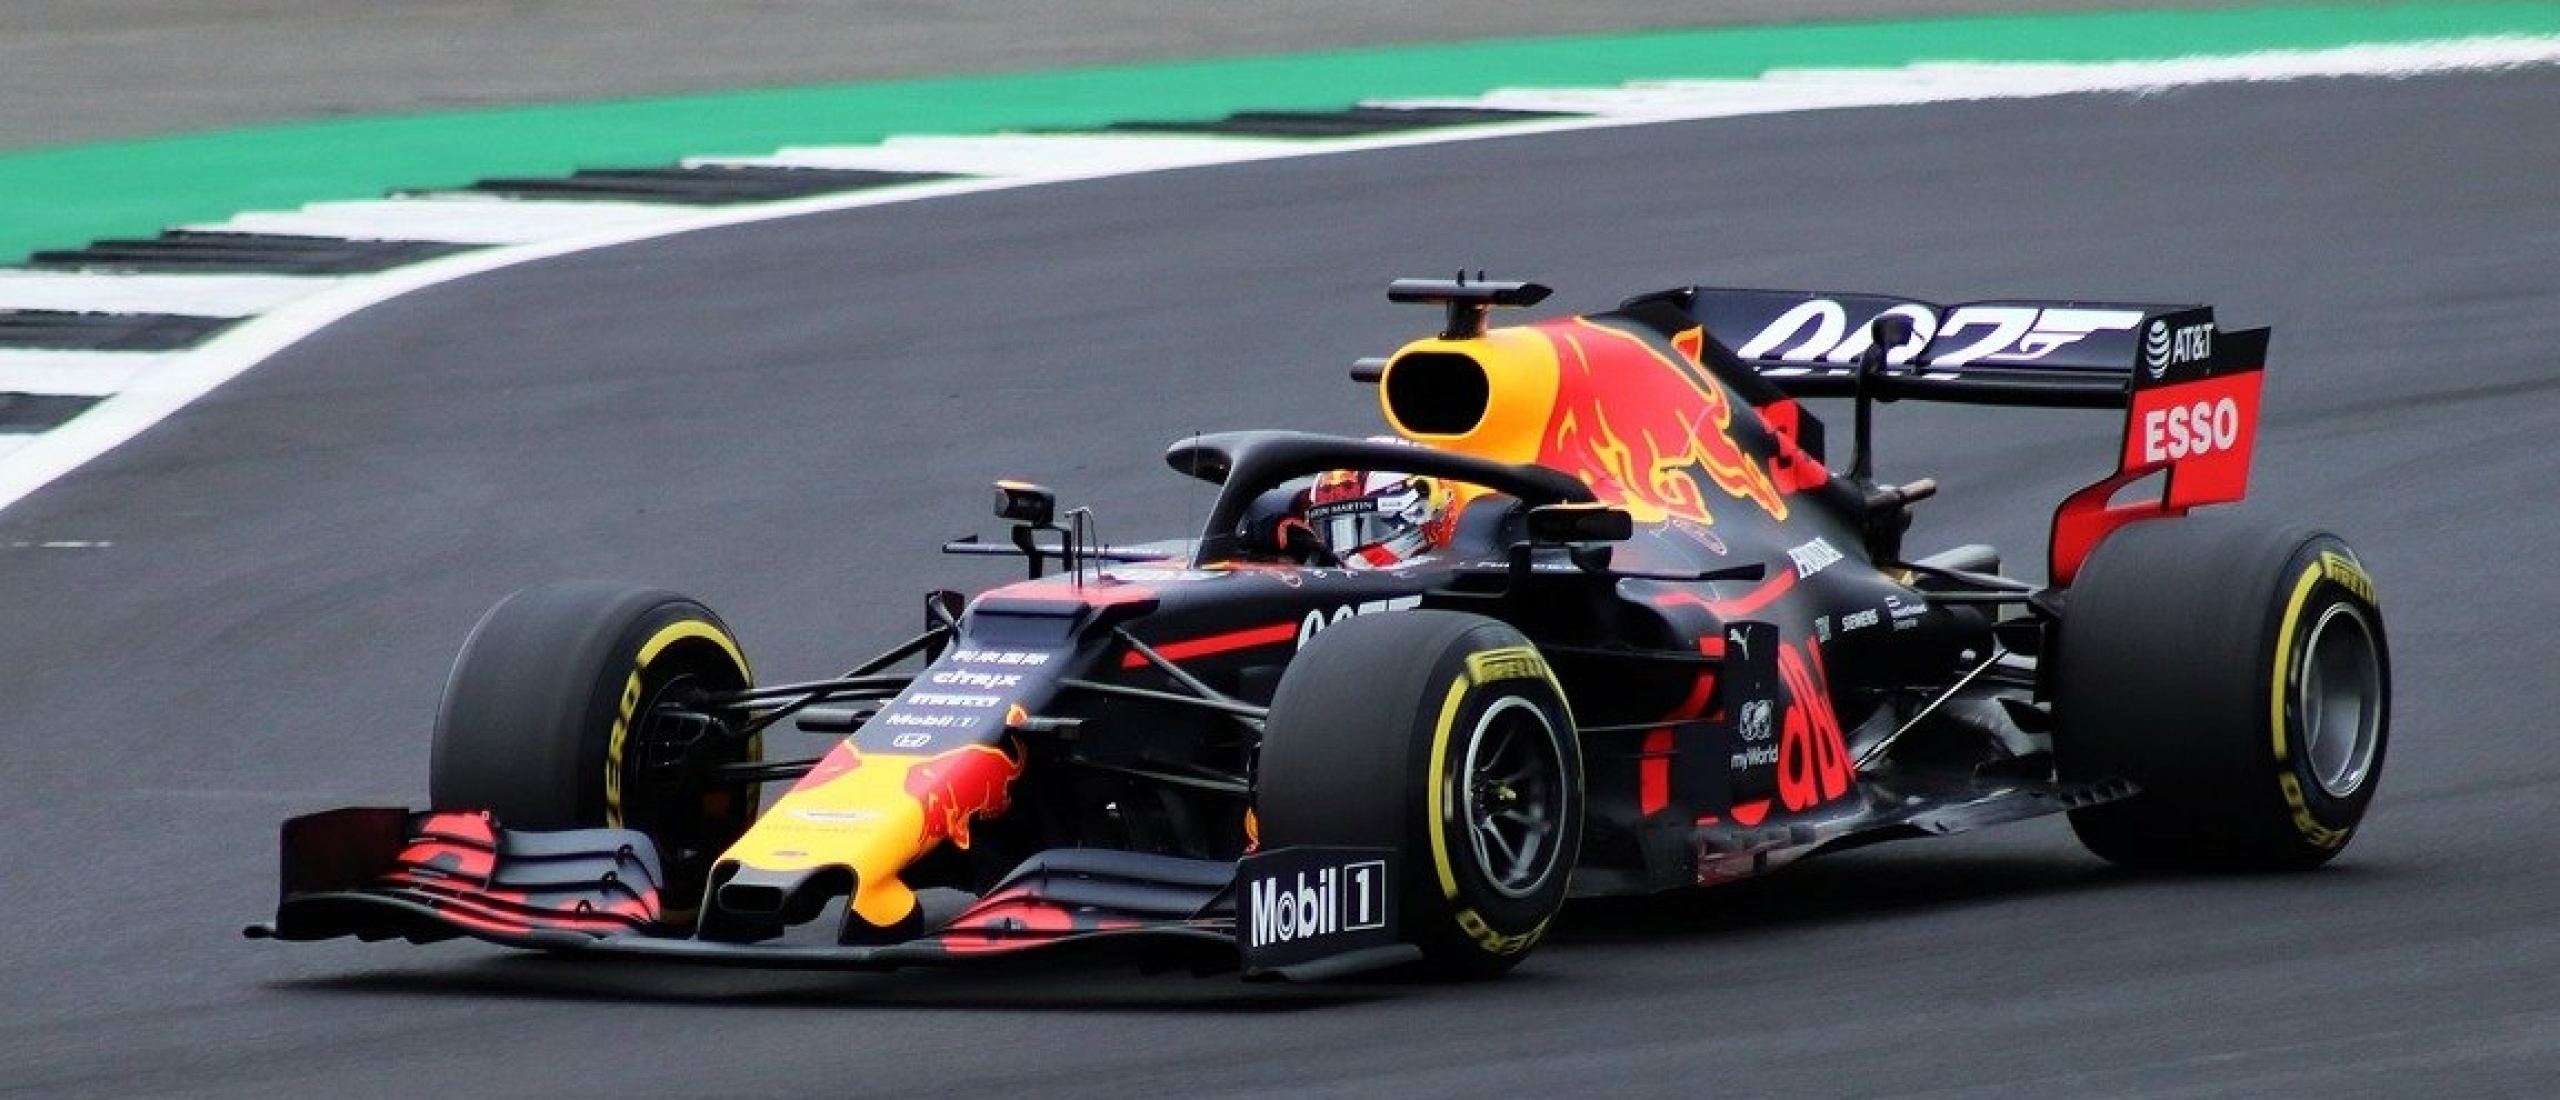 De Formule 1 met Max Verstappen bijwonen?